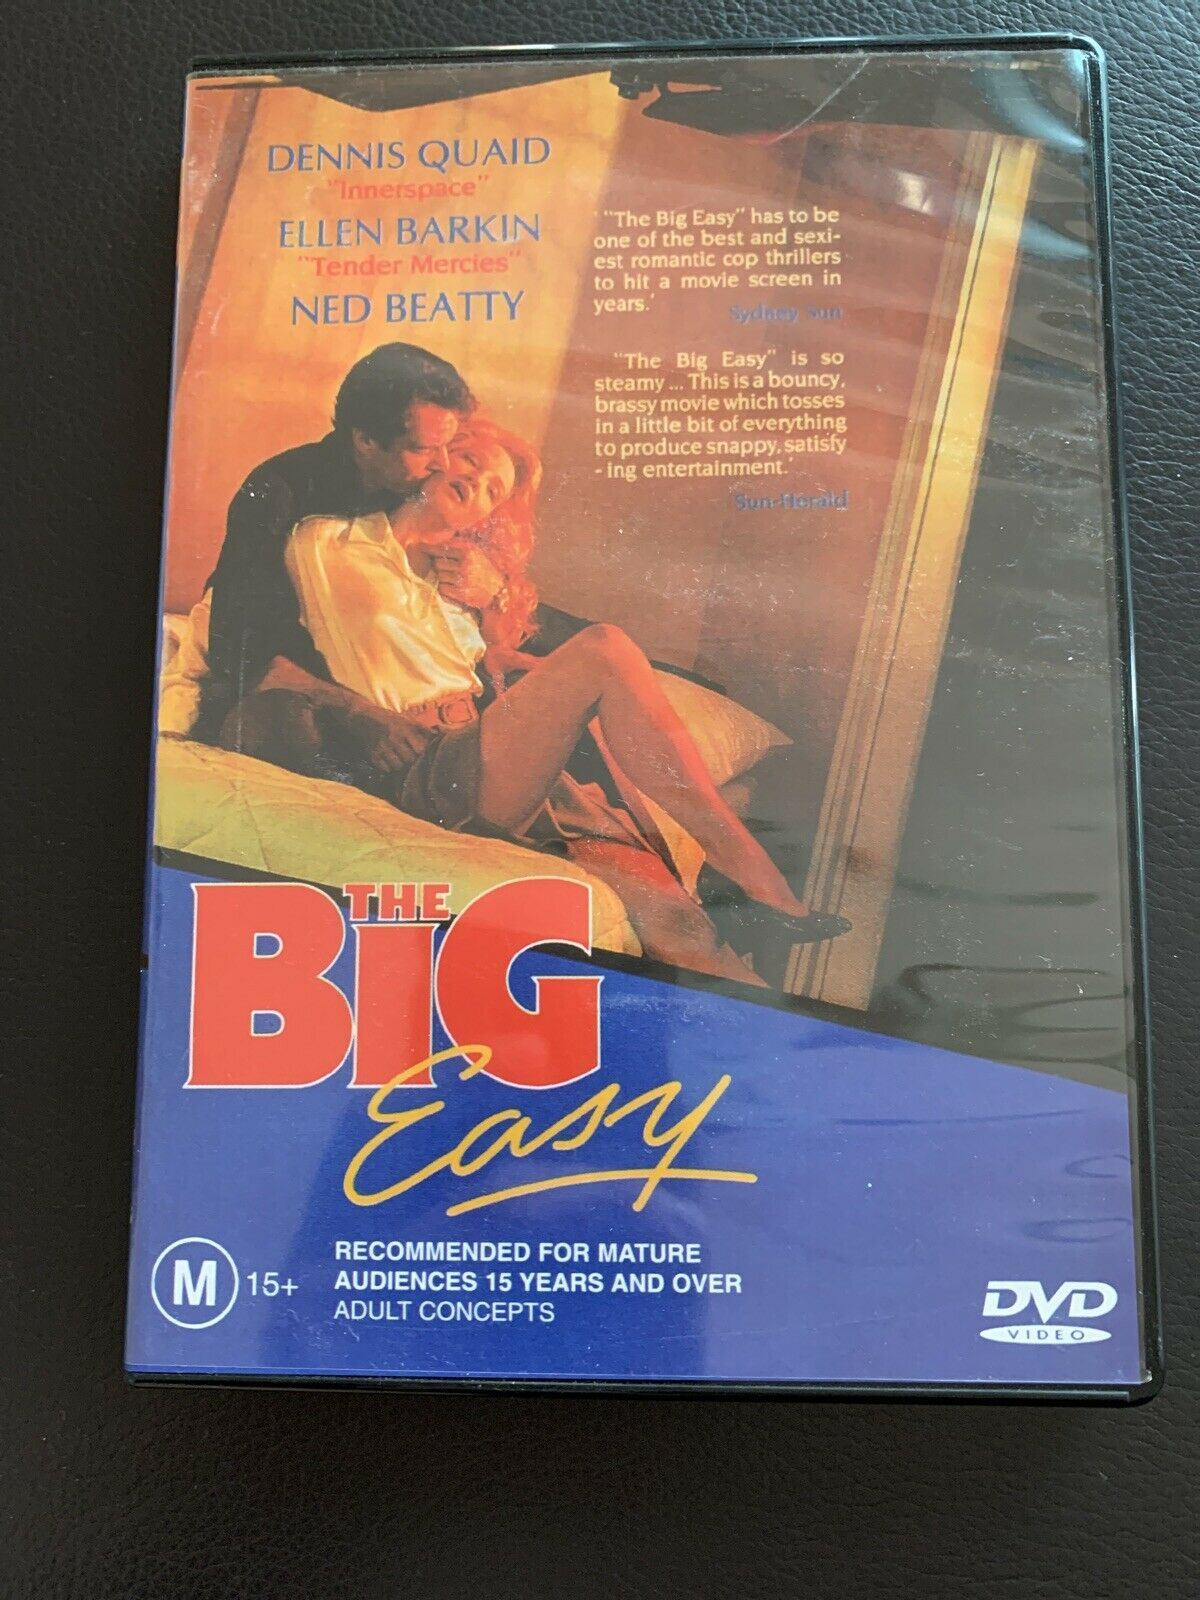 The Big Easy (DVD, 1986) Dennis Quaid, Ellen Barkin. Region 4